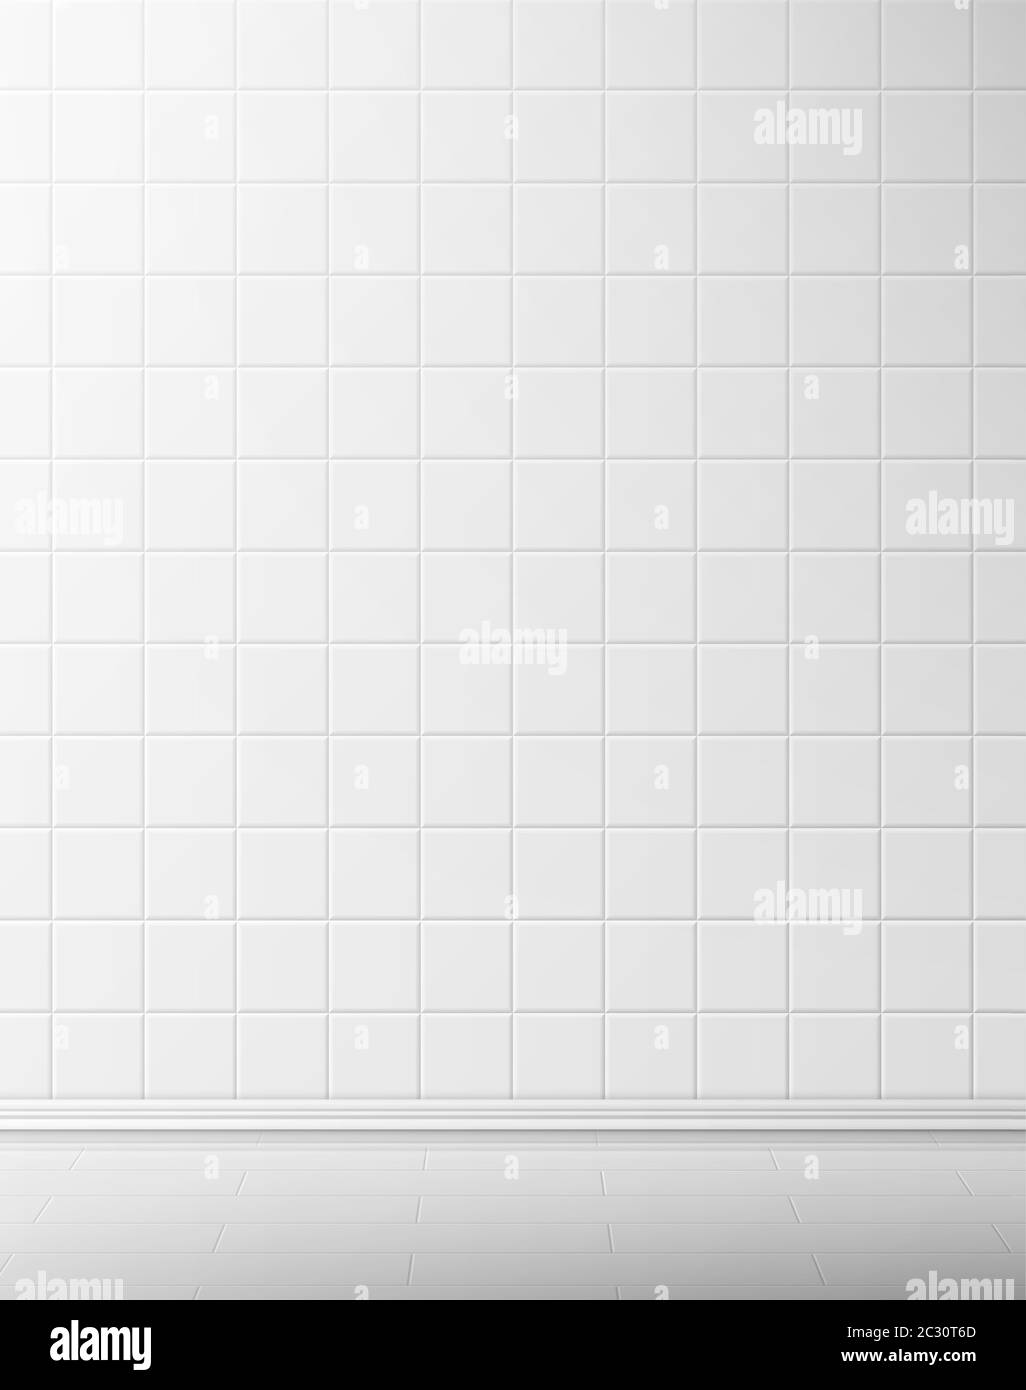 Vector piastrelle bianche parete e pavimento in bagno, cucina o wc. Interno 3d realistico di camera bianca vuota con superficie a mosaico quadrata. Illustrazione di Illustrazione Vettoriale